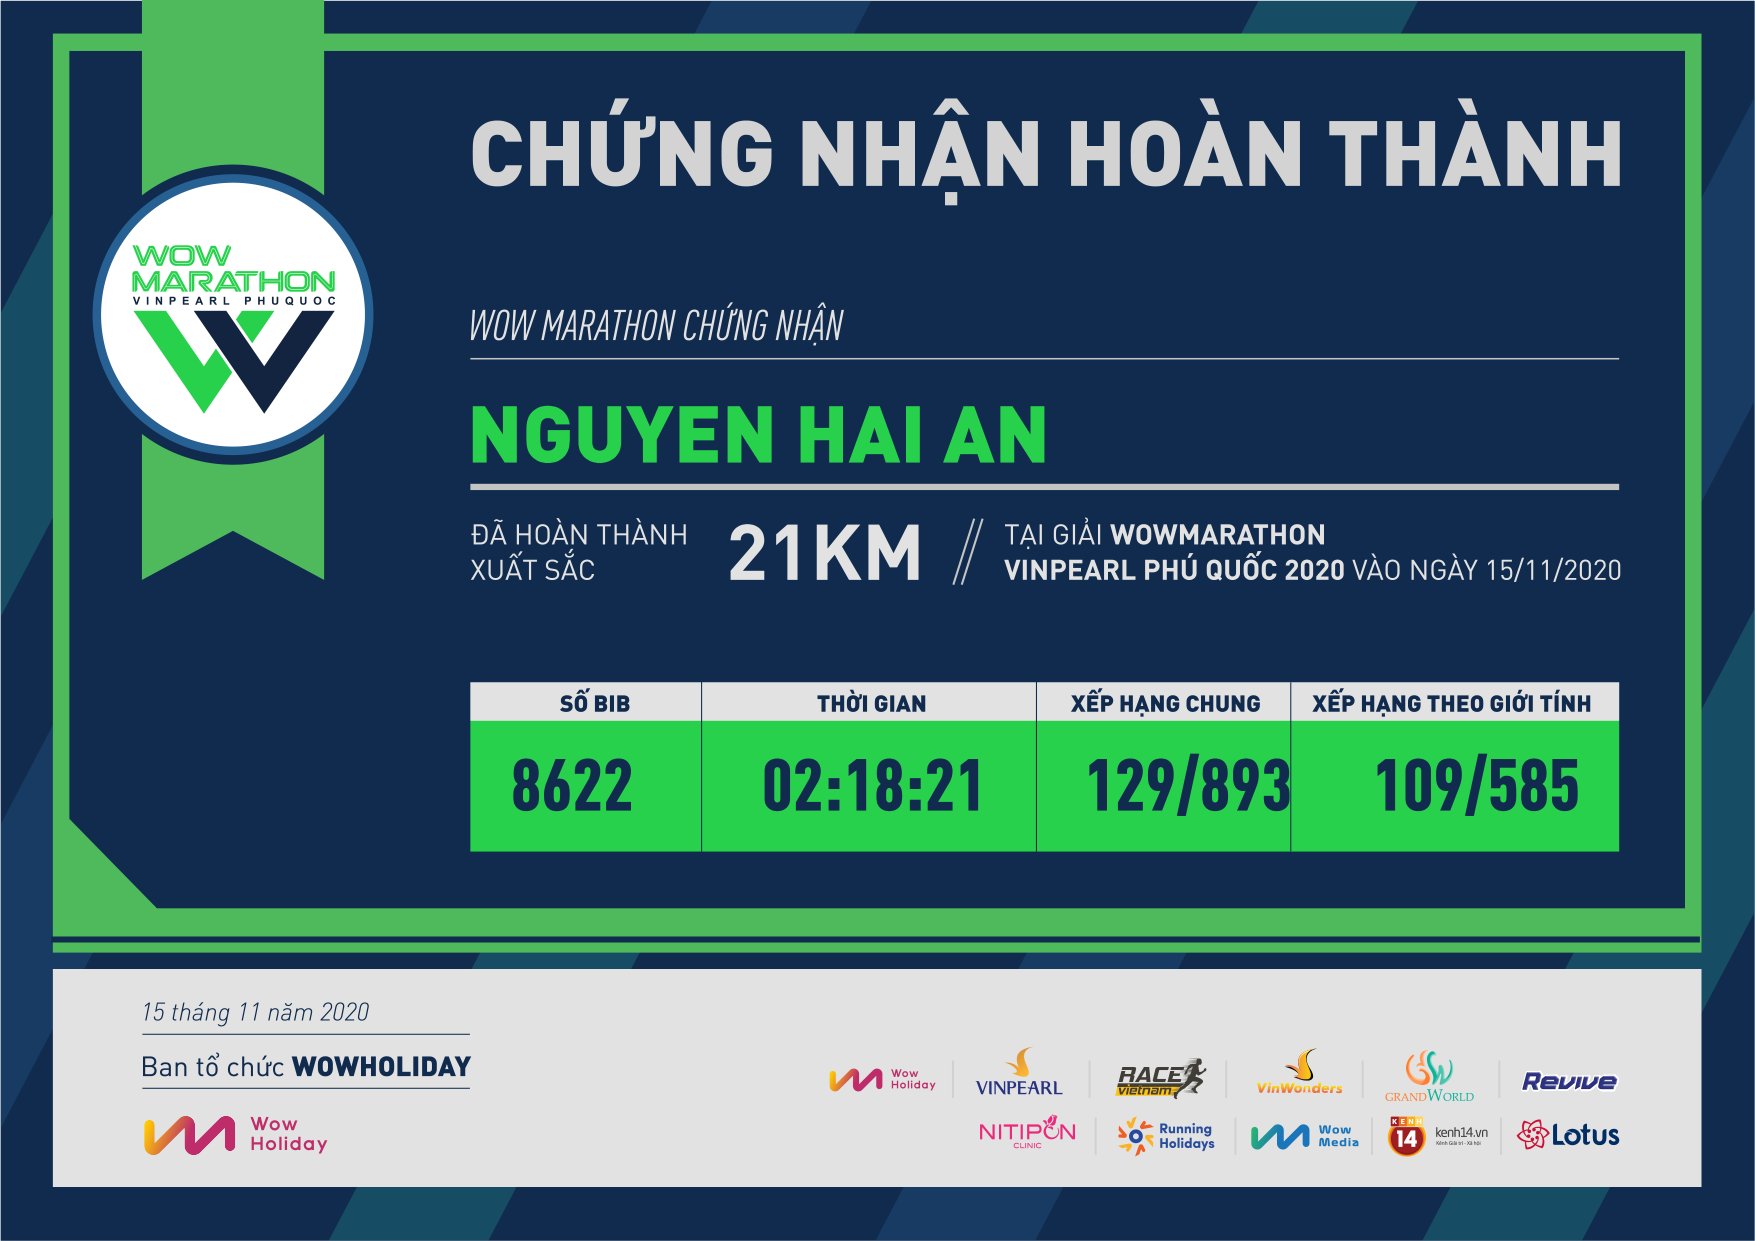 8622 - Nguyen Hai An